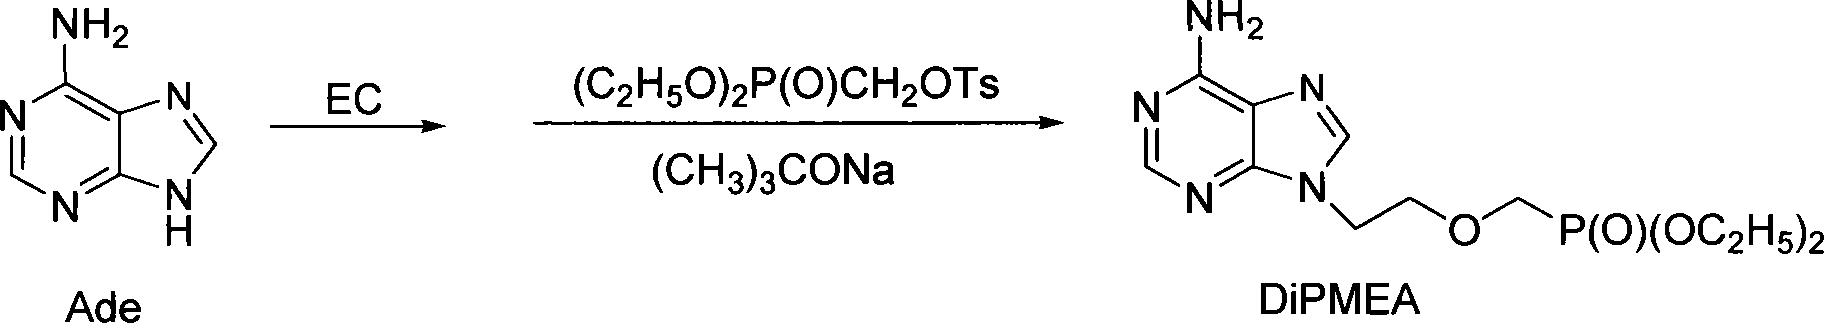 Method for synthesizing 9-[2-(diethylphosphono methoxyl)ethyl]adenine